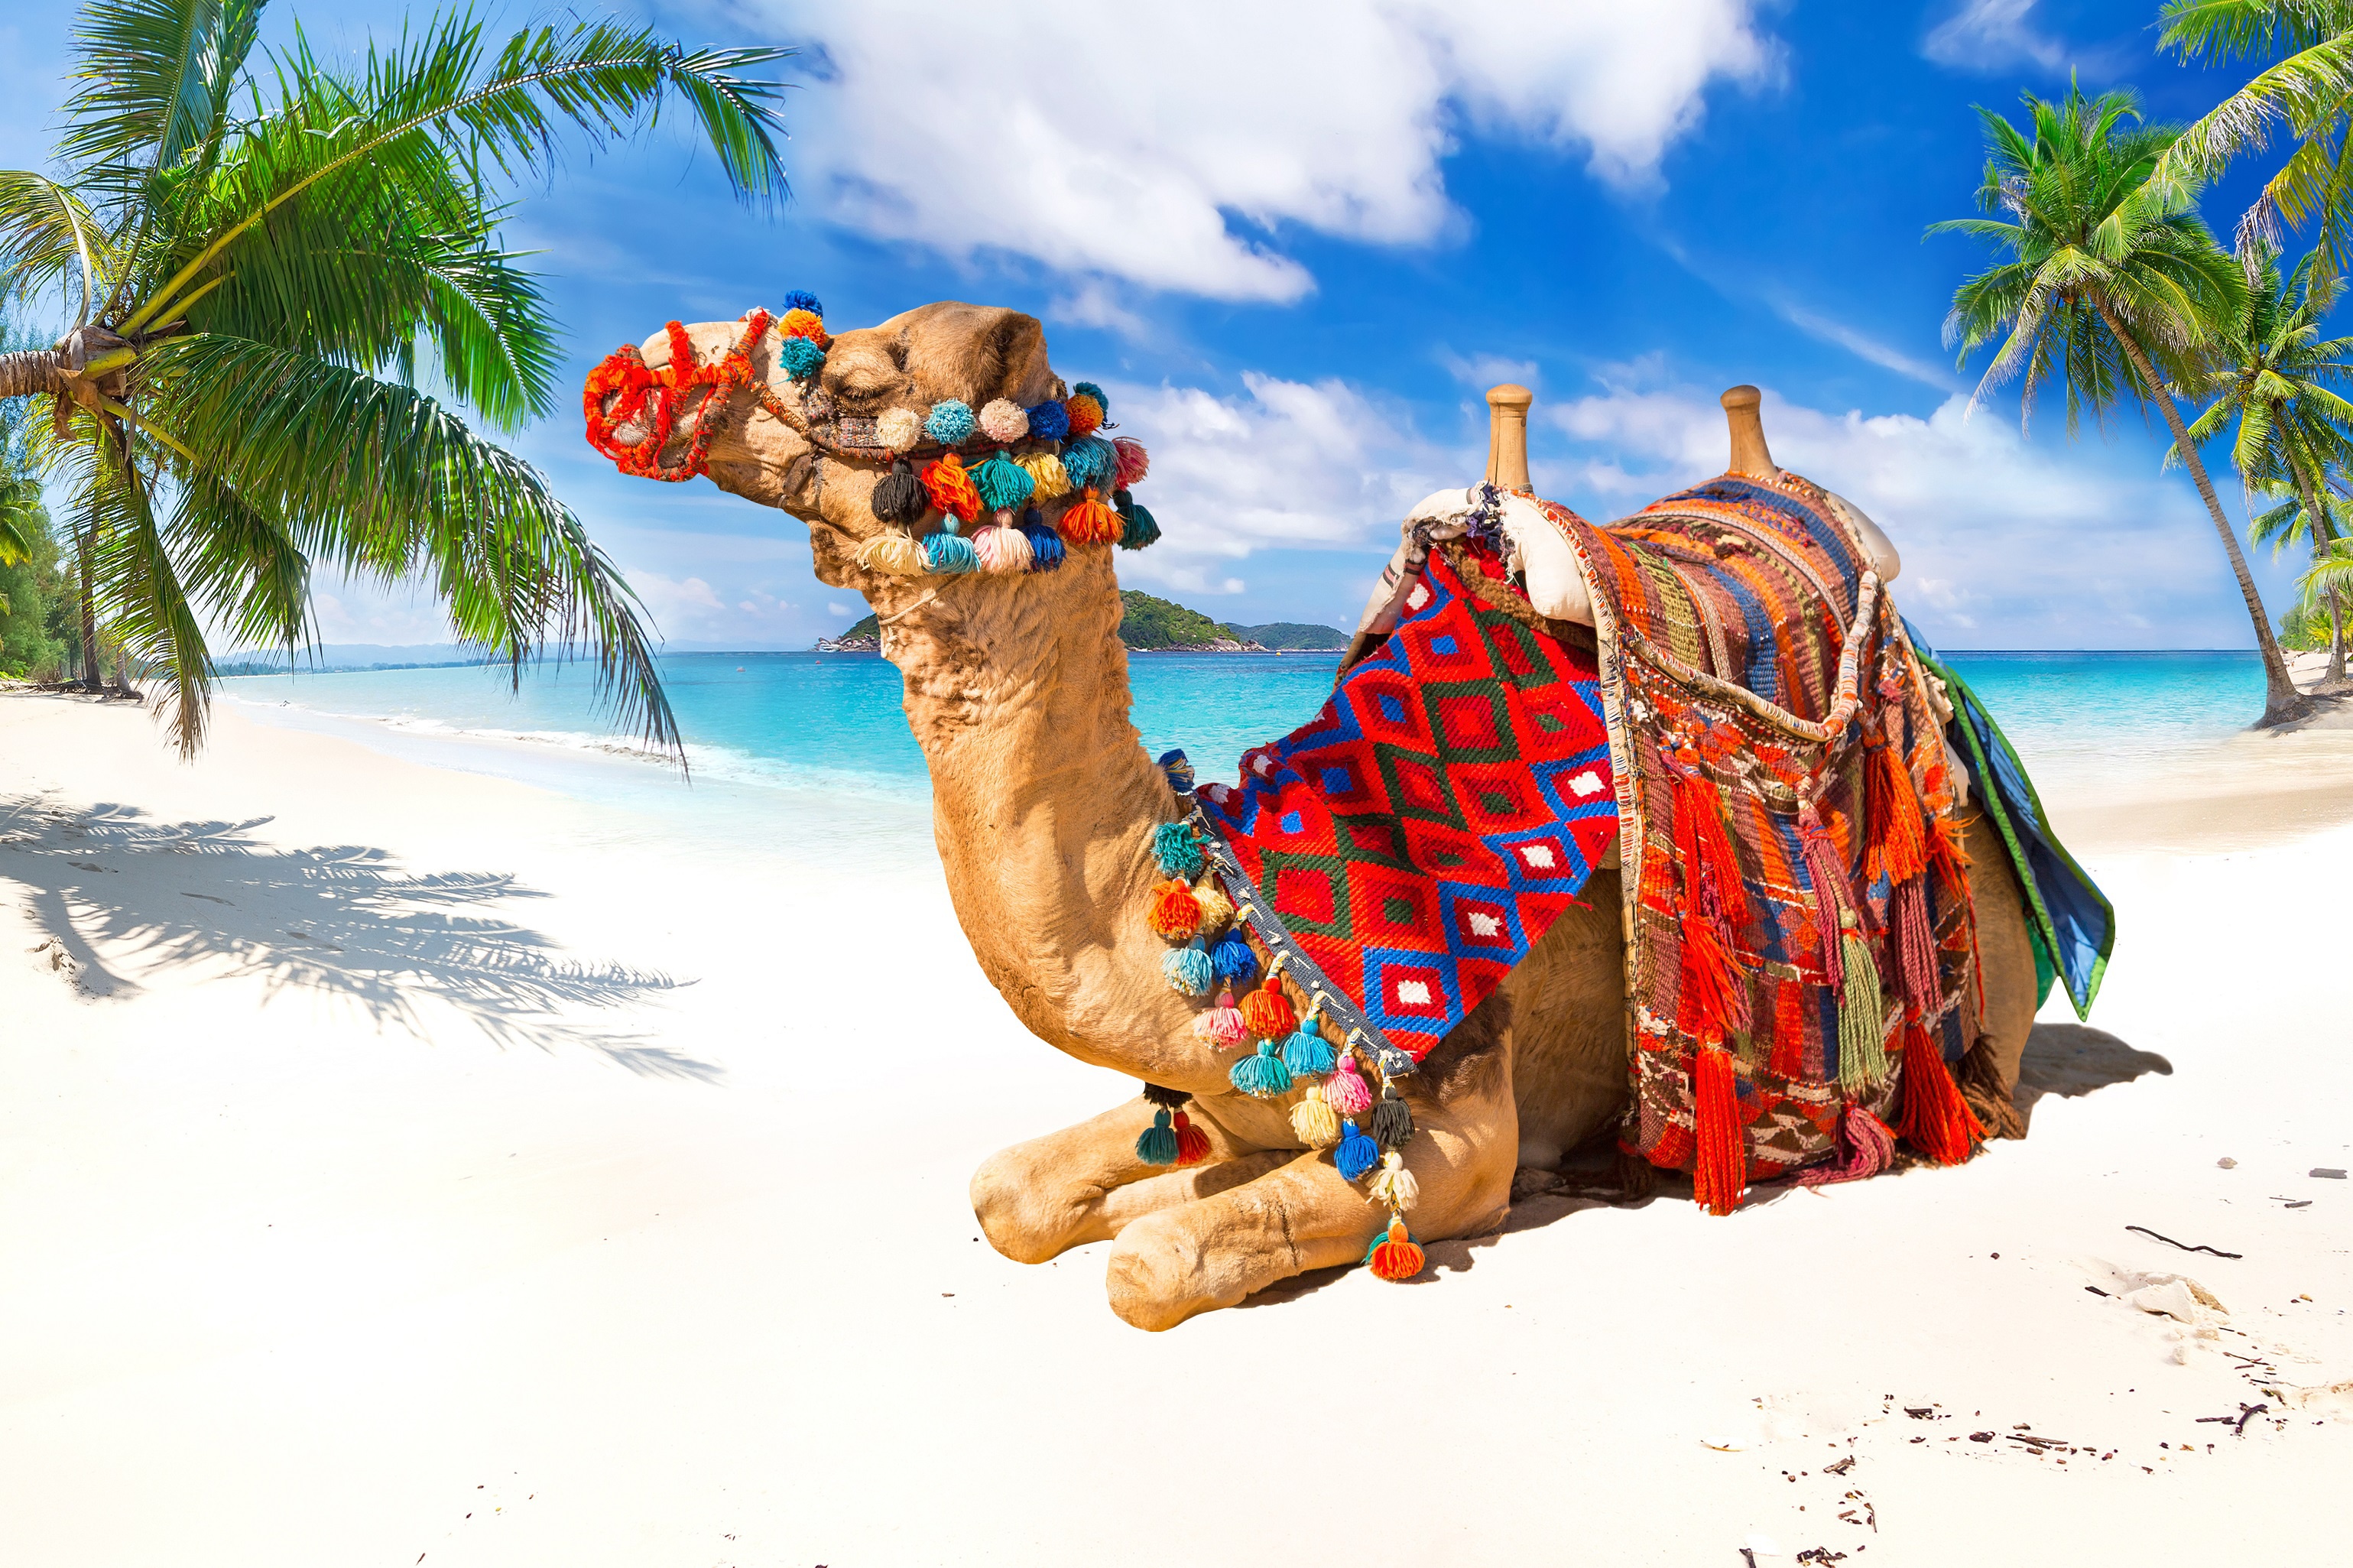 Скачать обои бесплатно Животные, Пляж, Песок, Тропический, Верблюд картинка на рабочий стол ПК